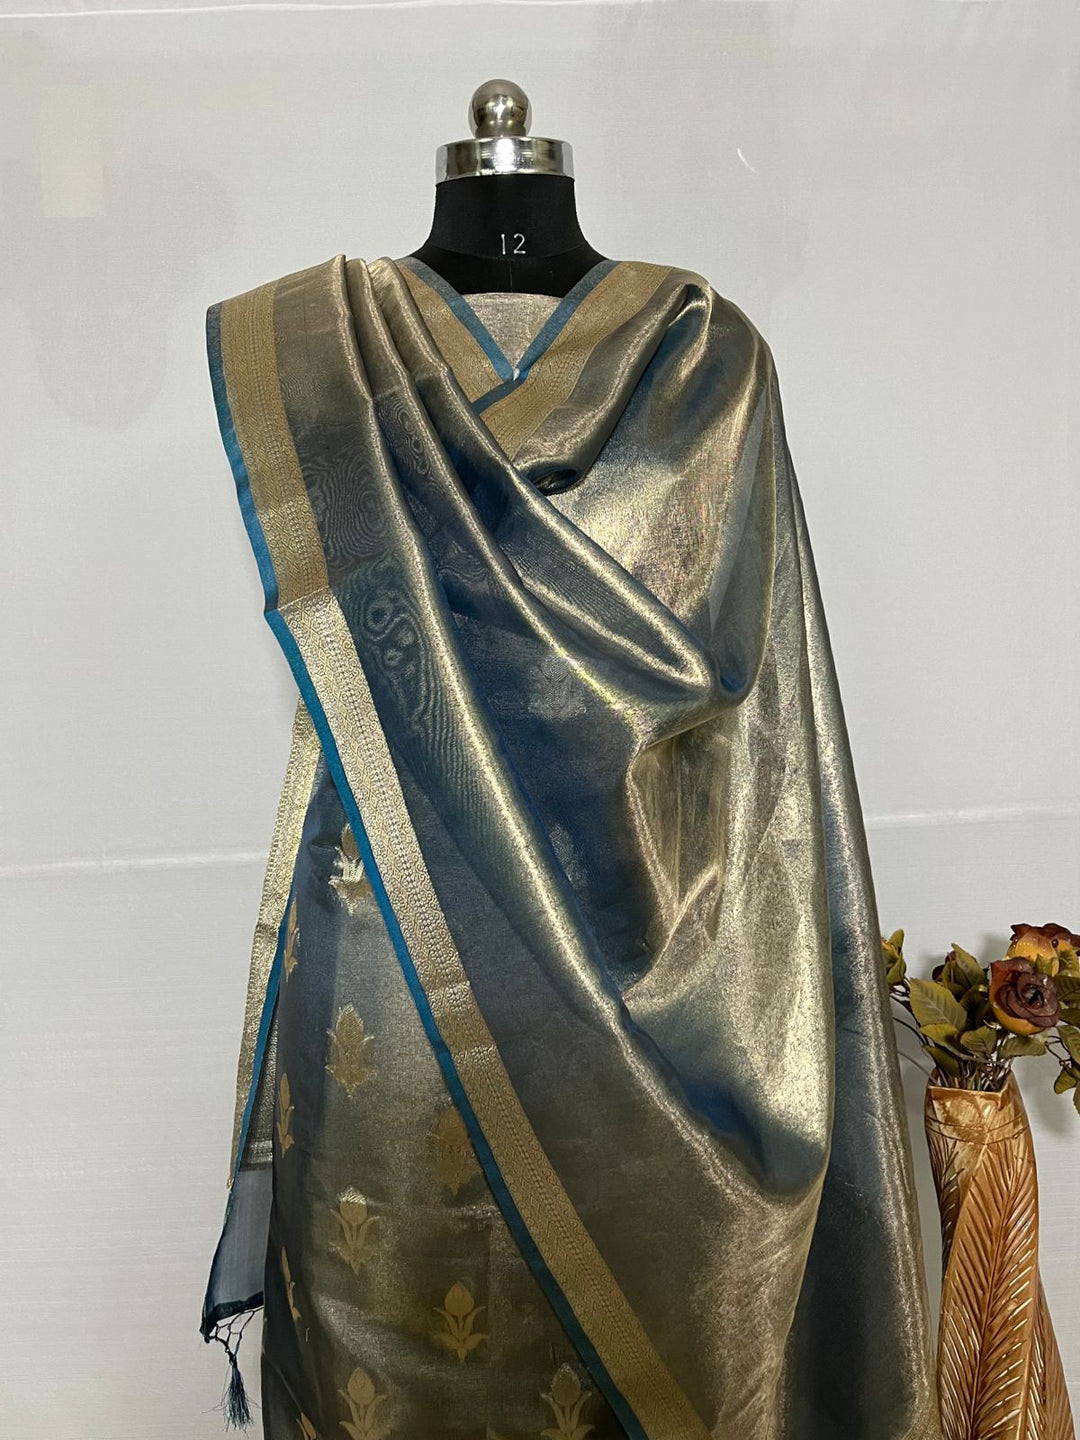 Pure Banarasi Tissue Unstitched Suit.